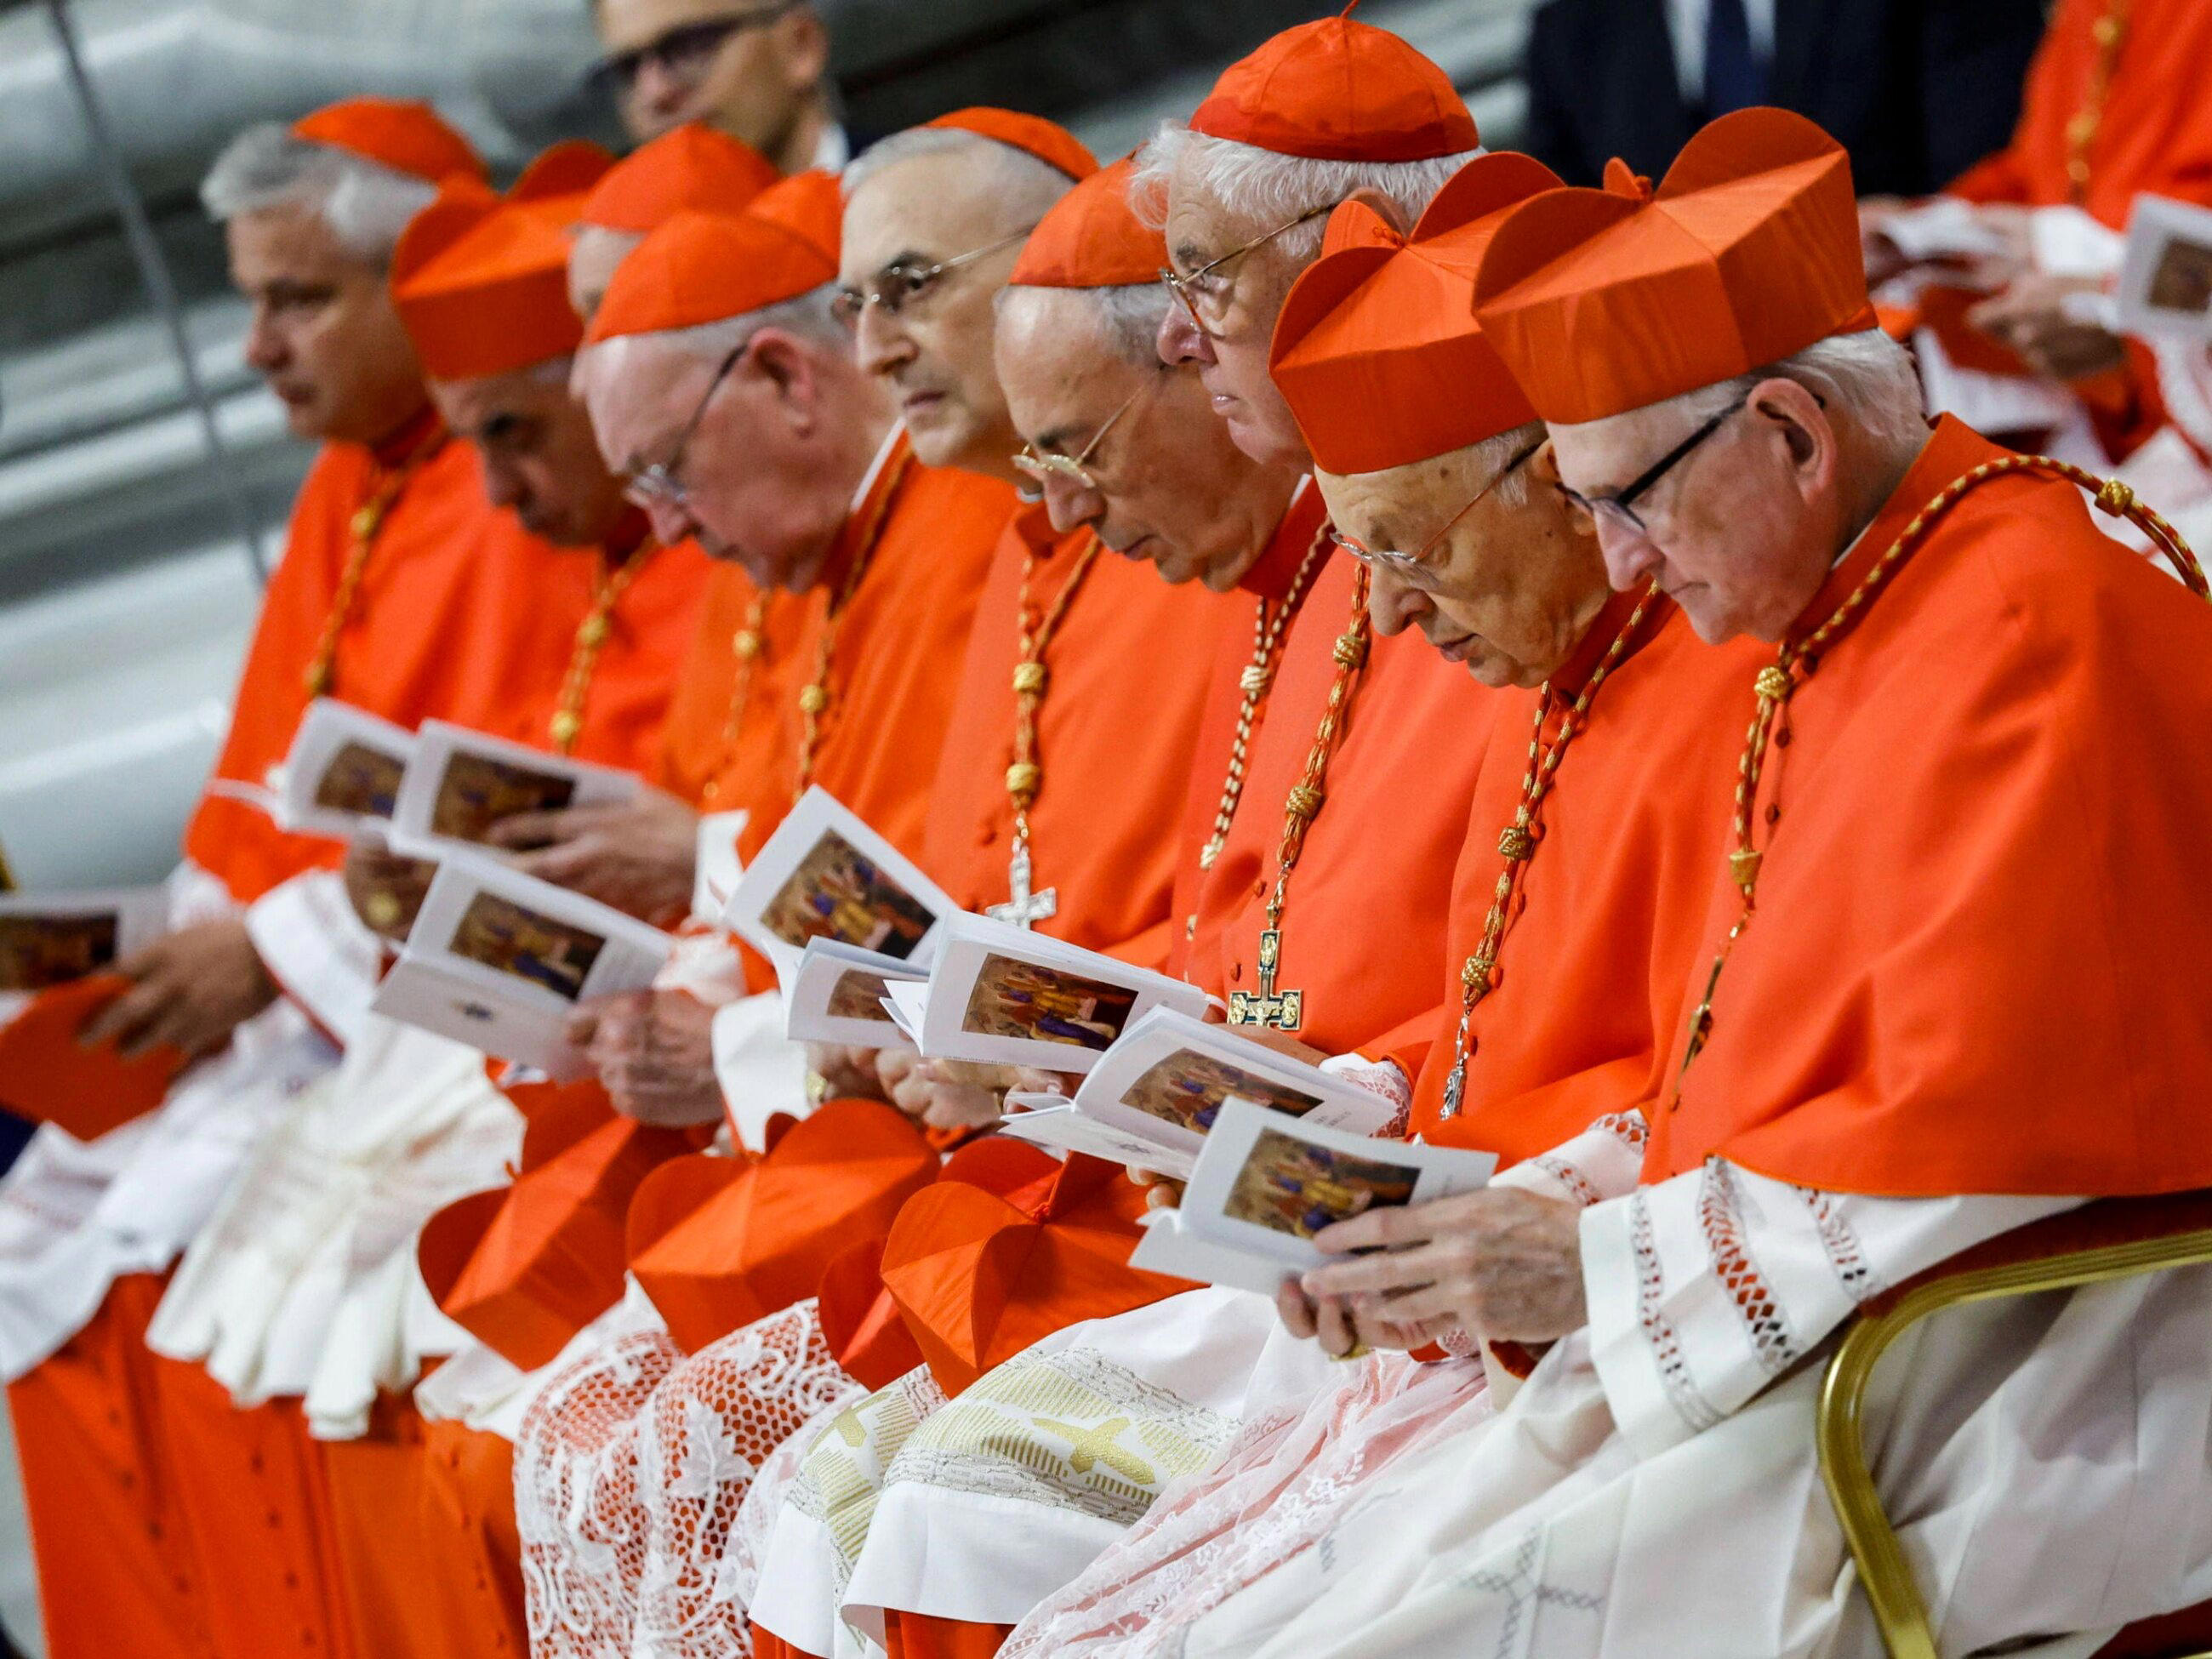 Synod biskupów w Watykanie. Opublikowano dokument końcowy